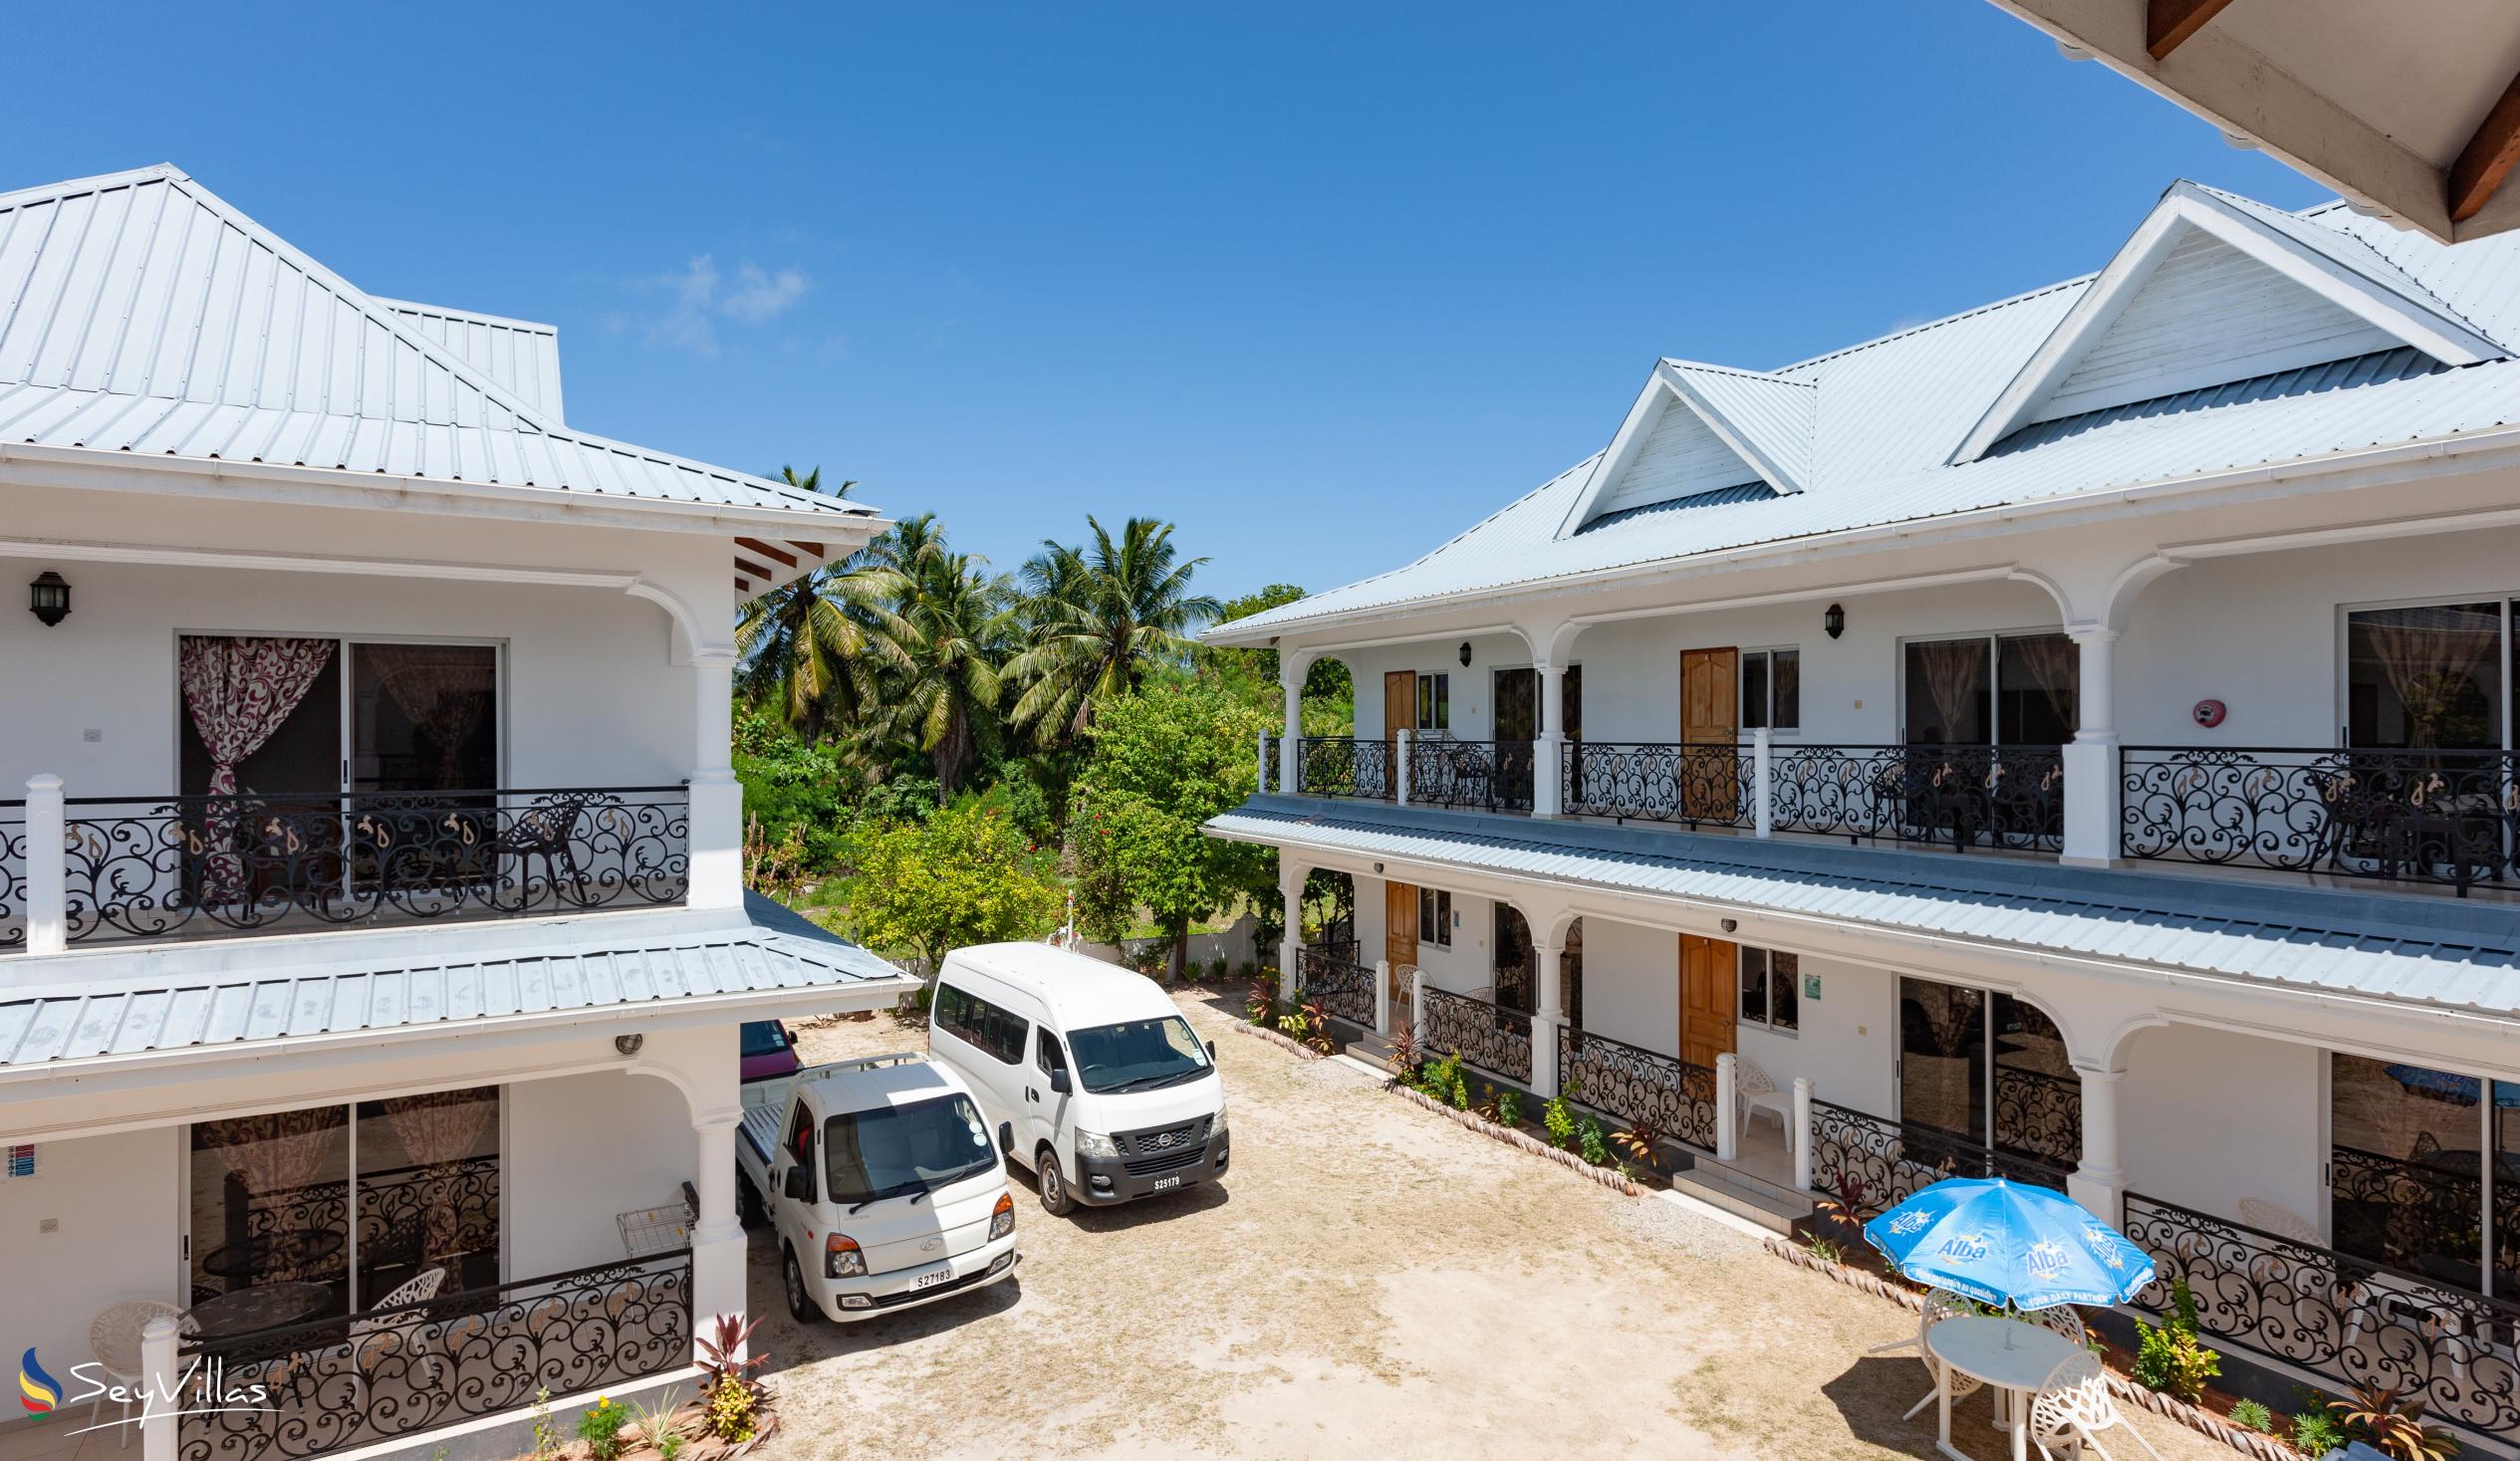 Foto 7: Casadani Luxury Guest House - Aussenbereich - Praslin (Seychellen)